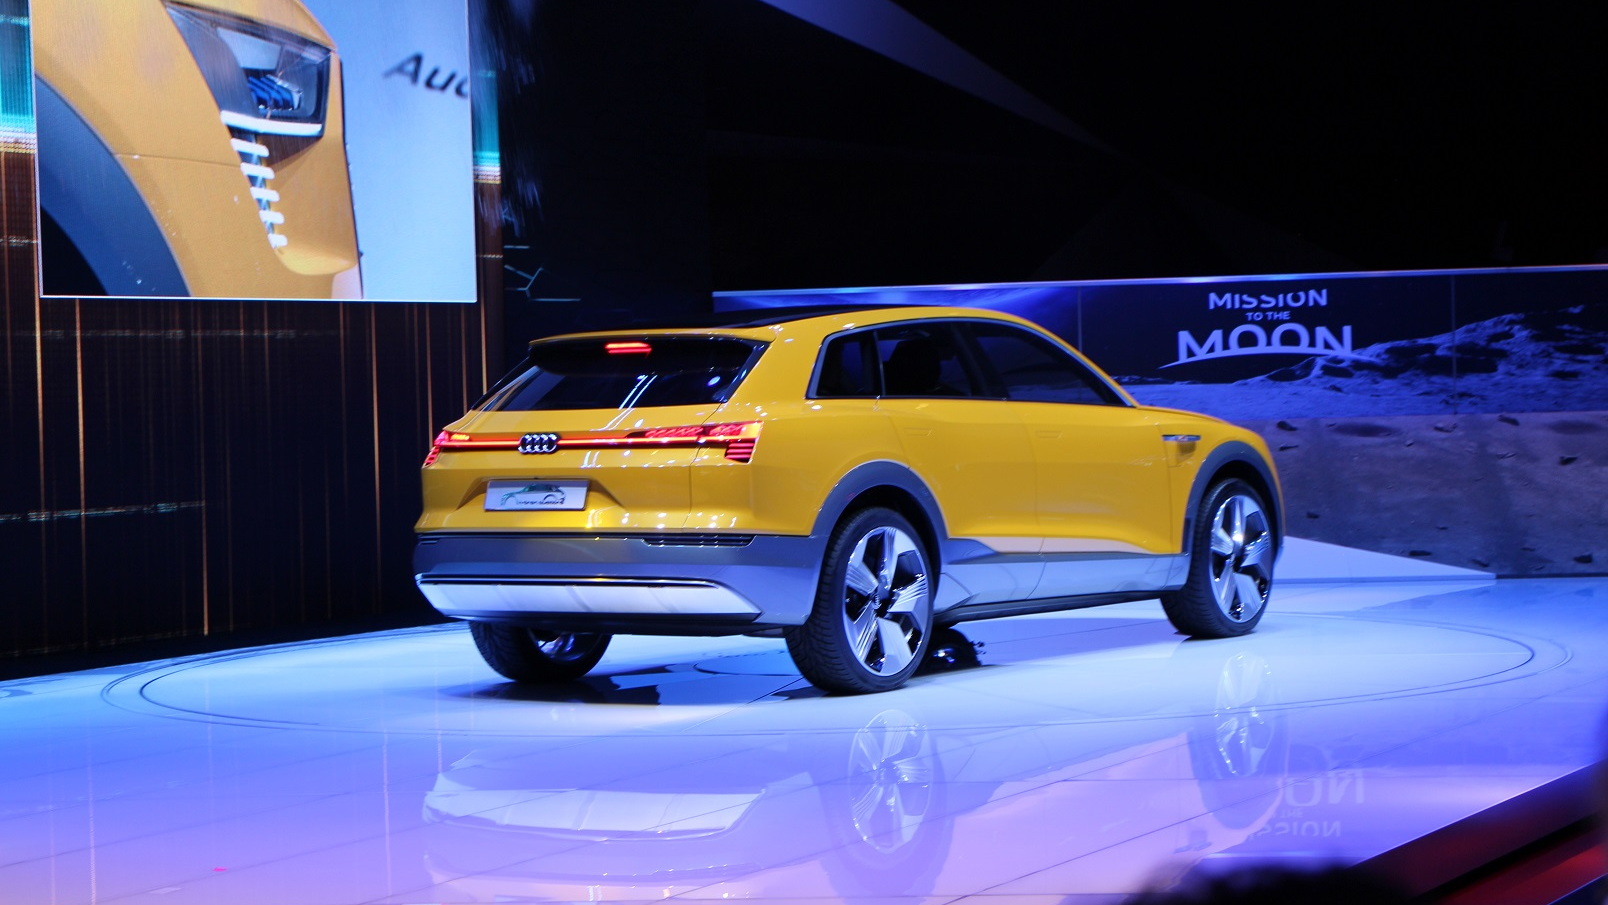 Audi h-tron quattro concept, 2016 Detroit Auto Show